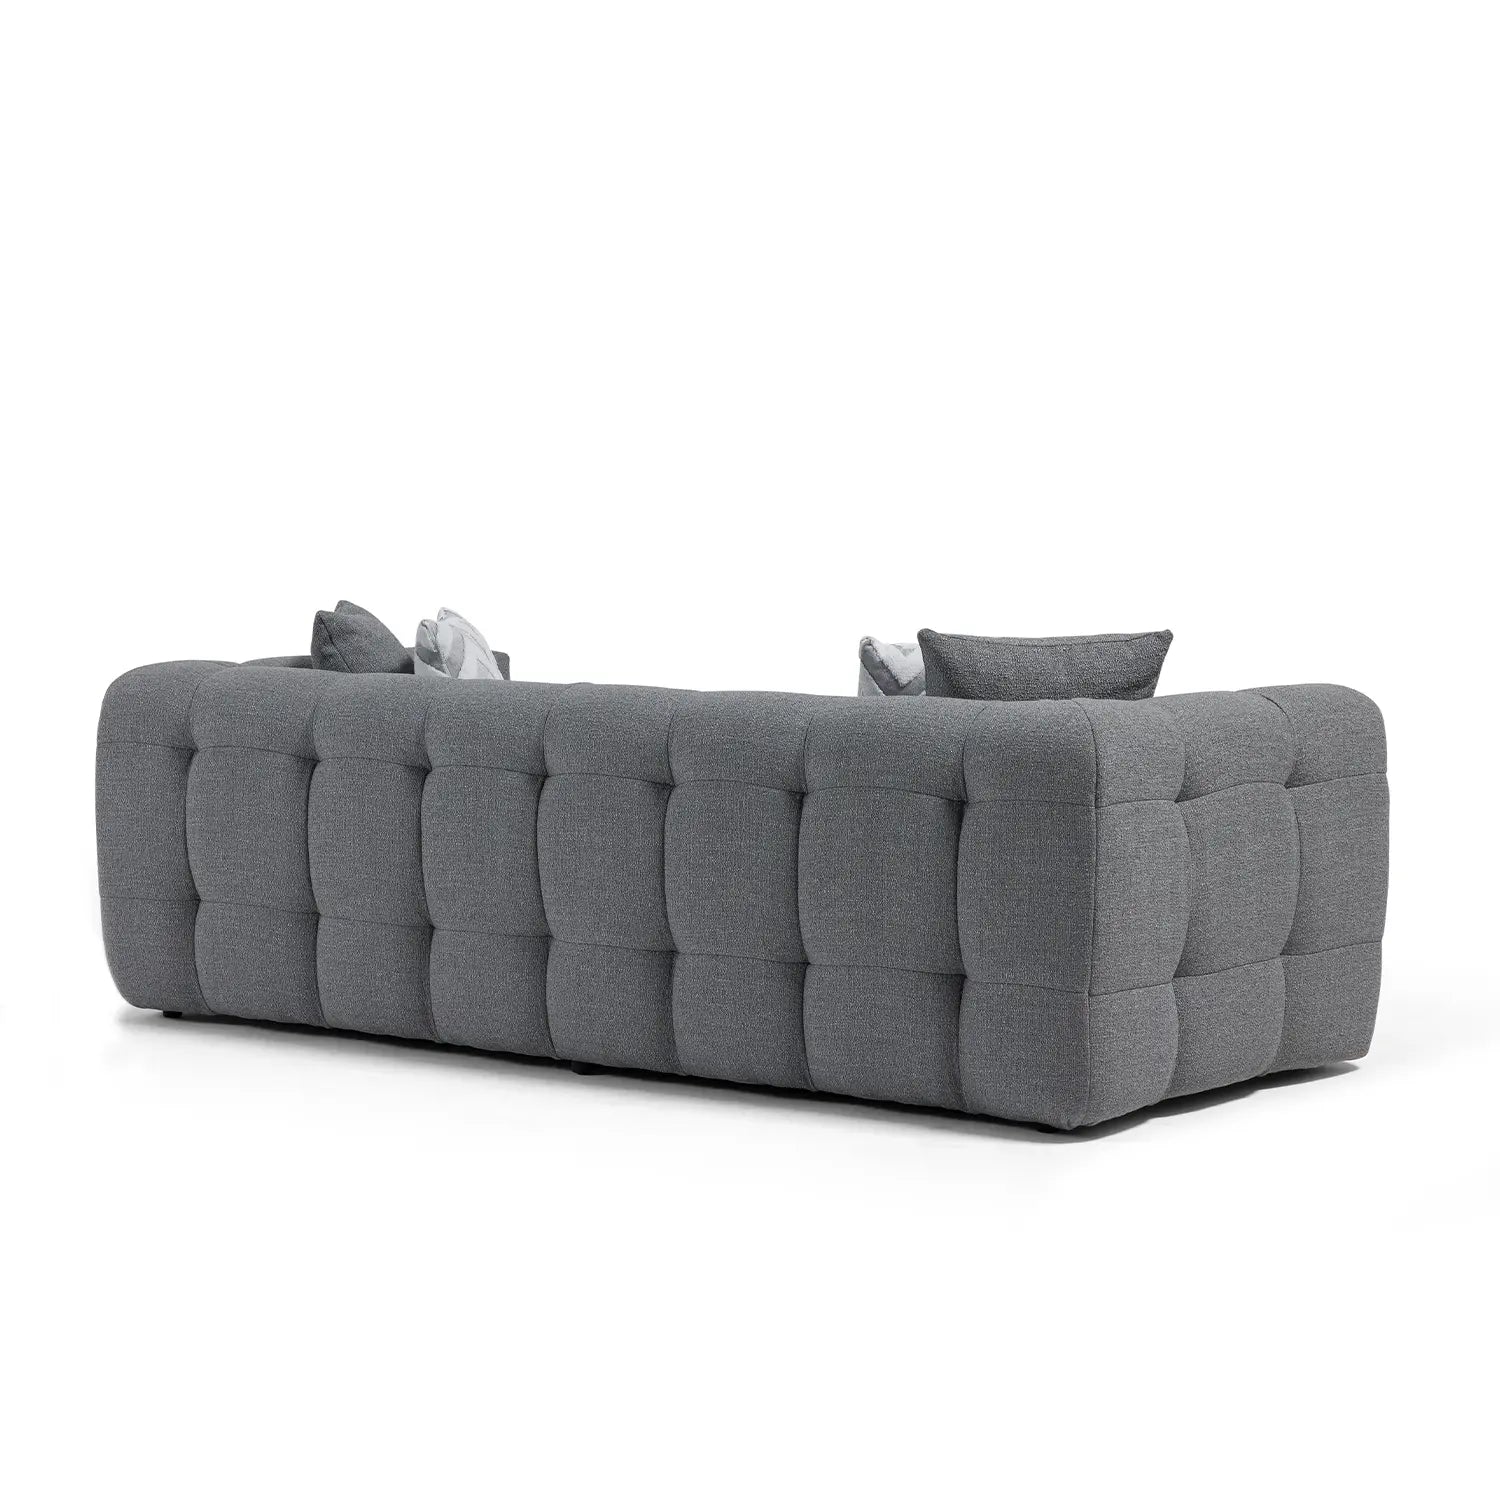 Amsterdam Sofa - Grey